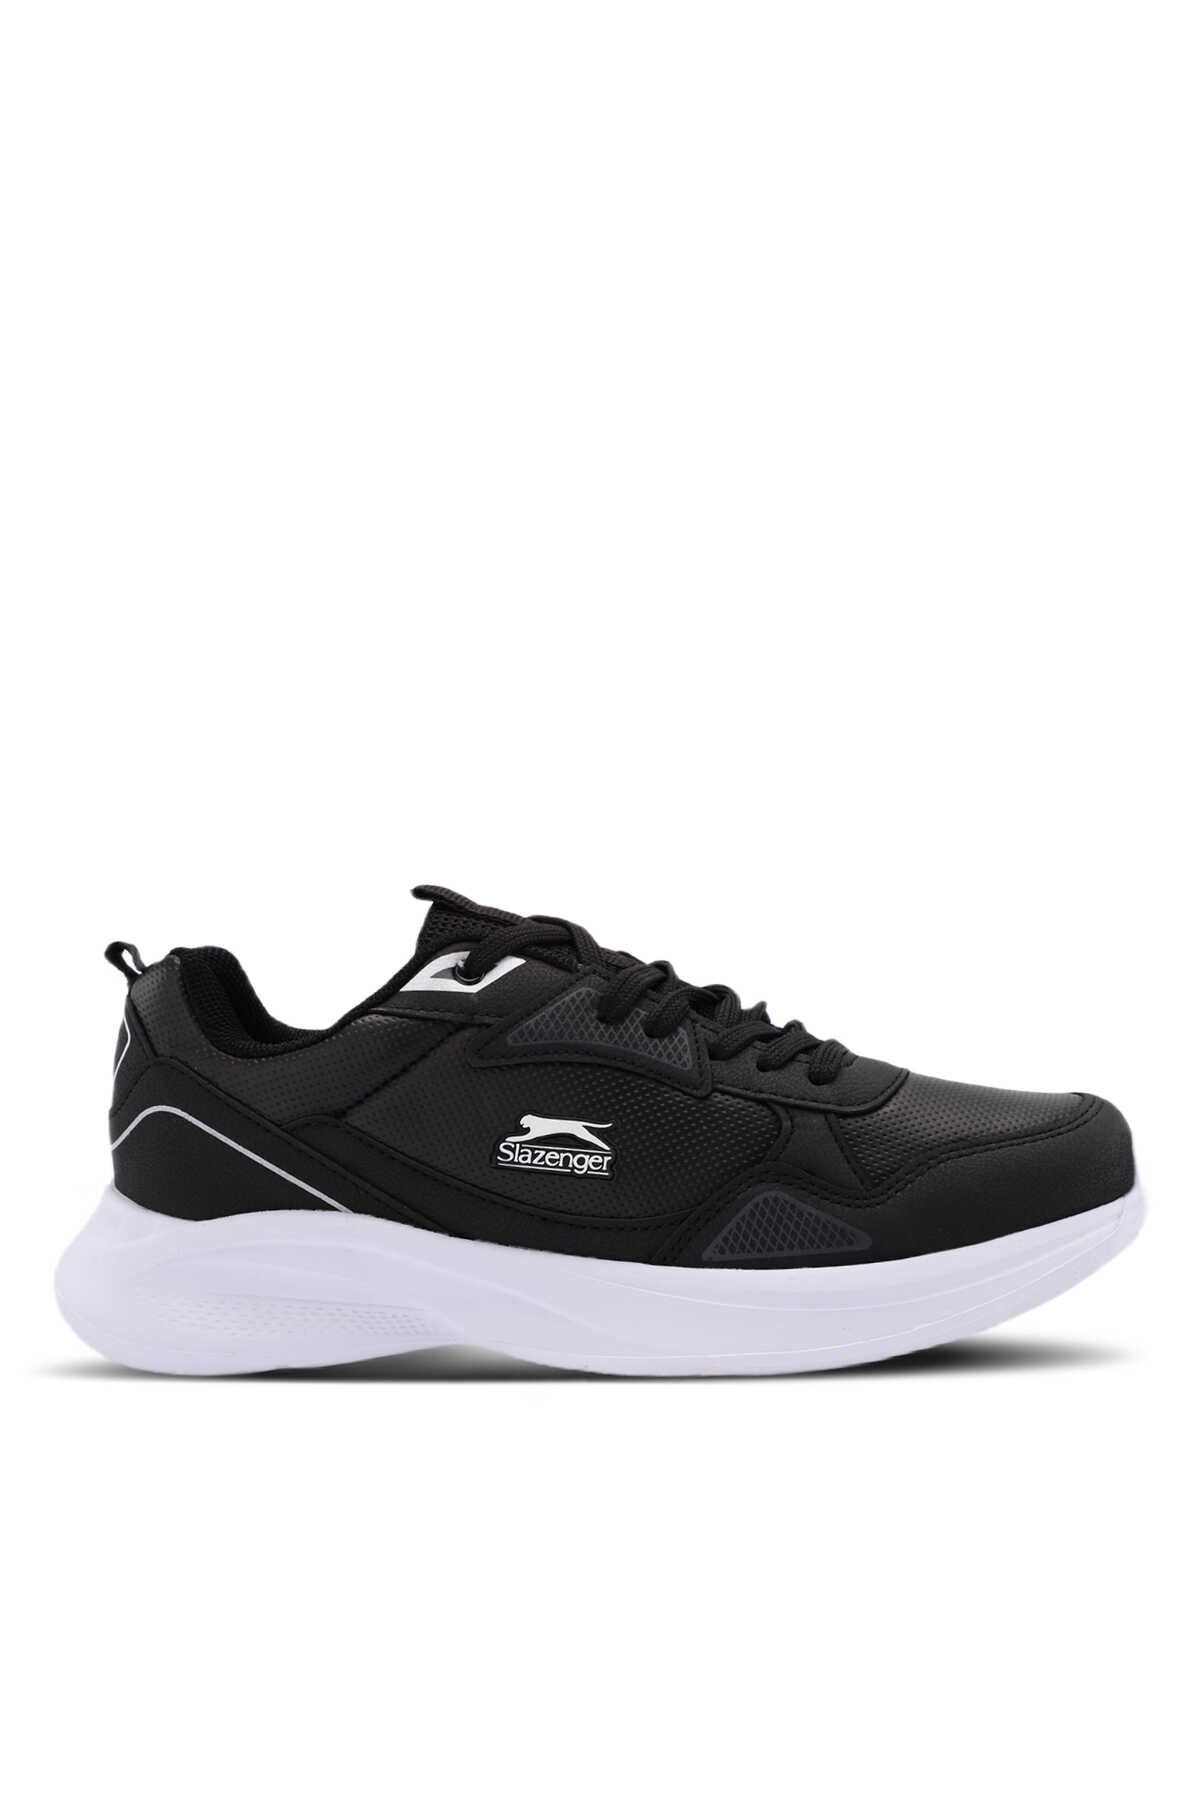 Slazenger - Slazenger KAYLA Sneaker Erkek Ayakkabı Siyah / Beyaz